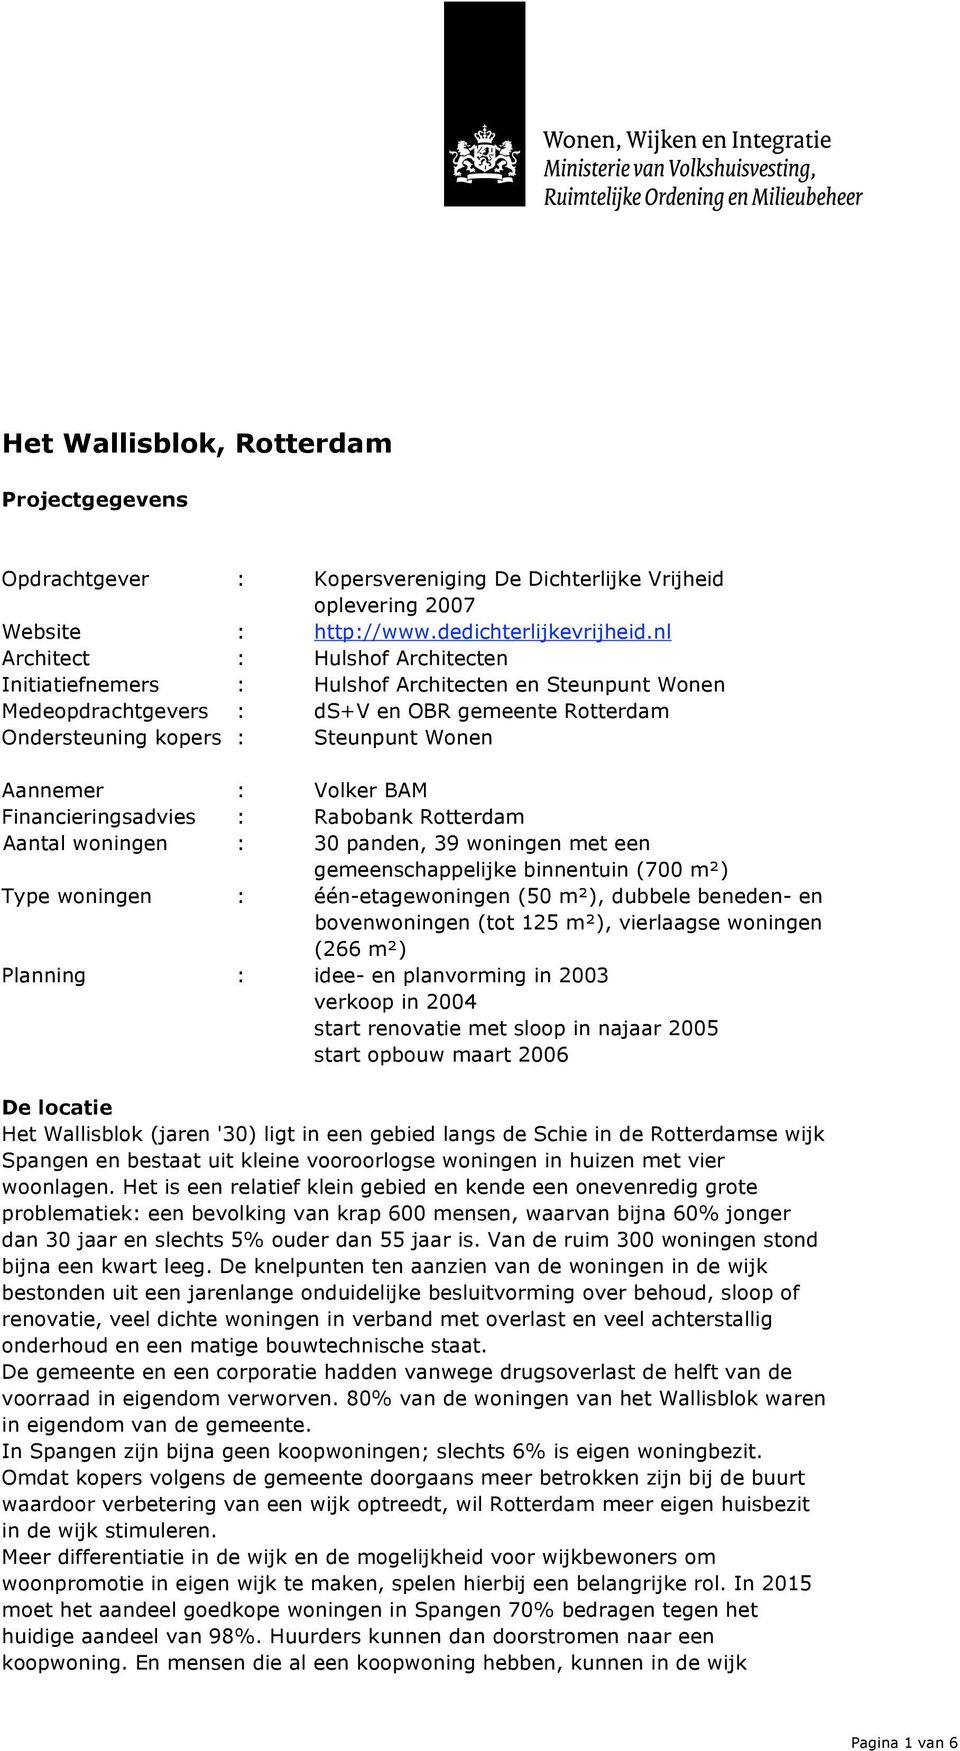 Volker BAM Financieringsadvies : Rabobank Rotterdam Aantal woningen : 30 panden, 39 woningen met een gemeenschappelijke binnentuin (700 m!) Type woningen : één-etagewoningen (50 m!